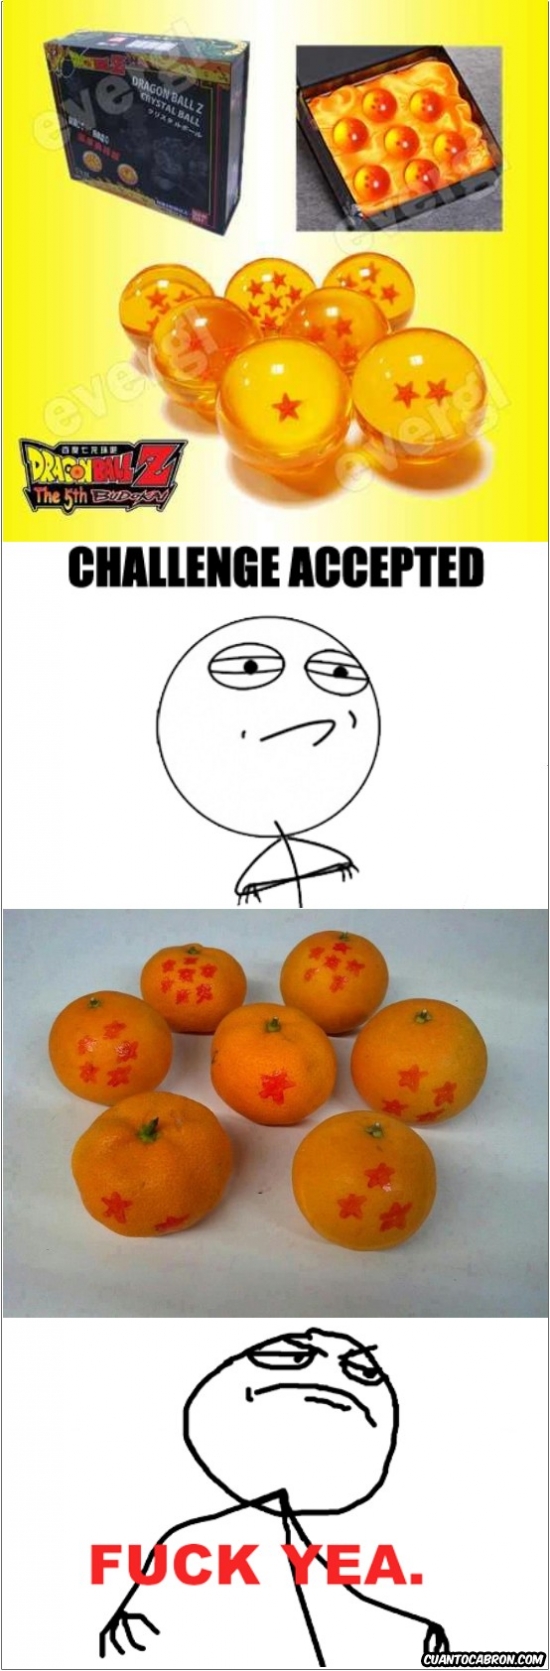 challenge accepted,dragón ball,esferas del dragón,fuck yea